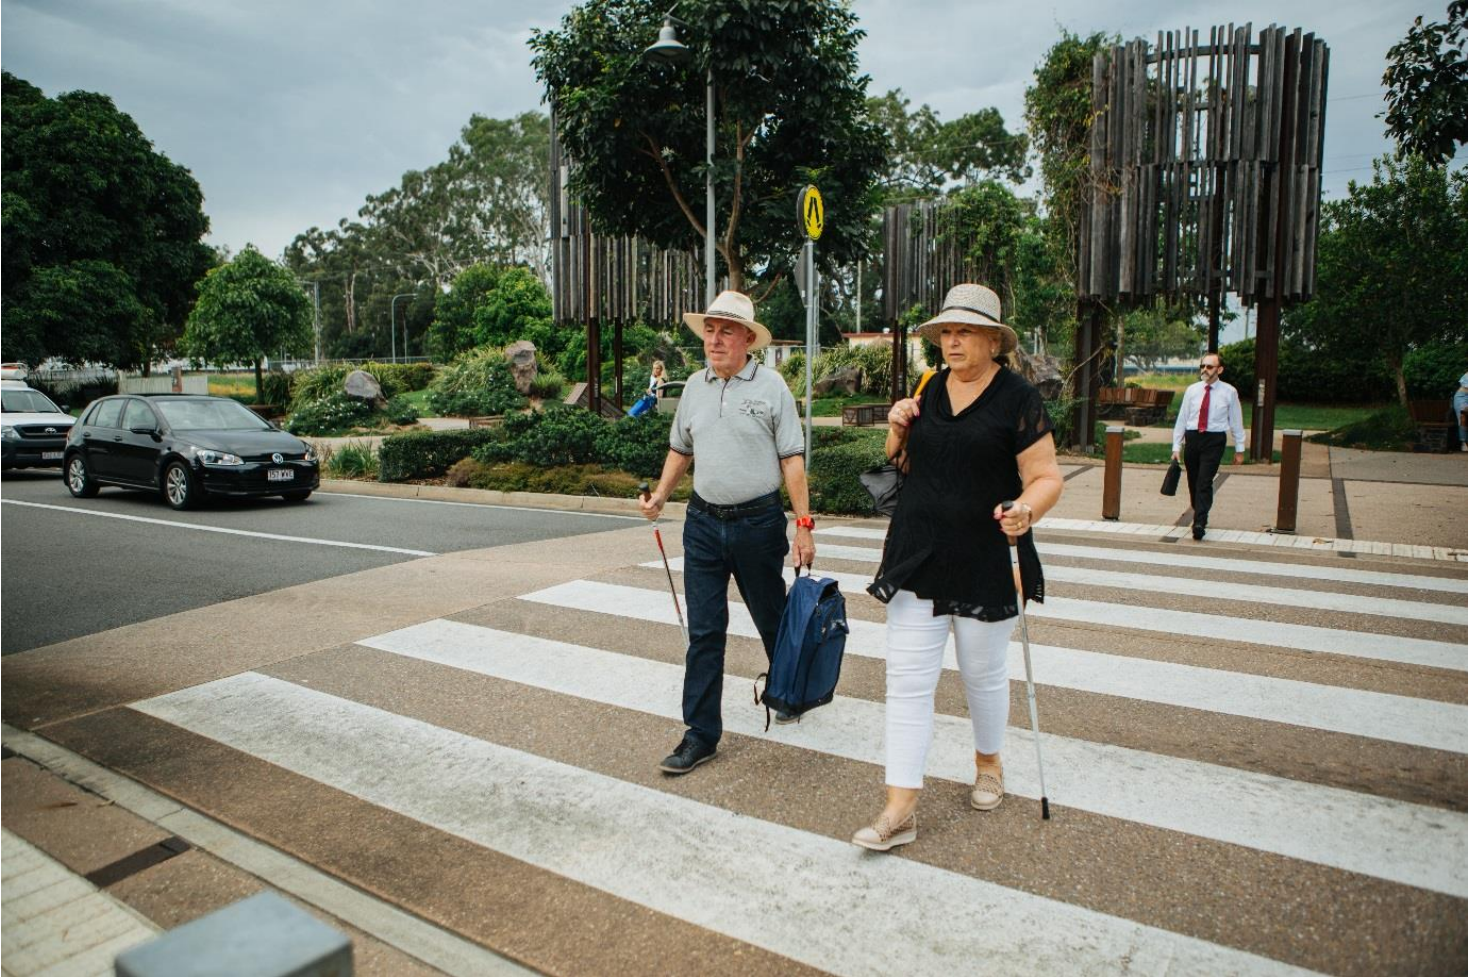 Older people walking on crossing